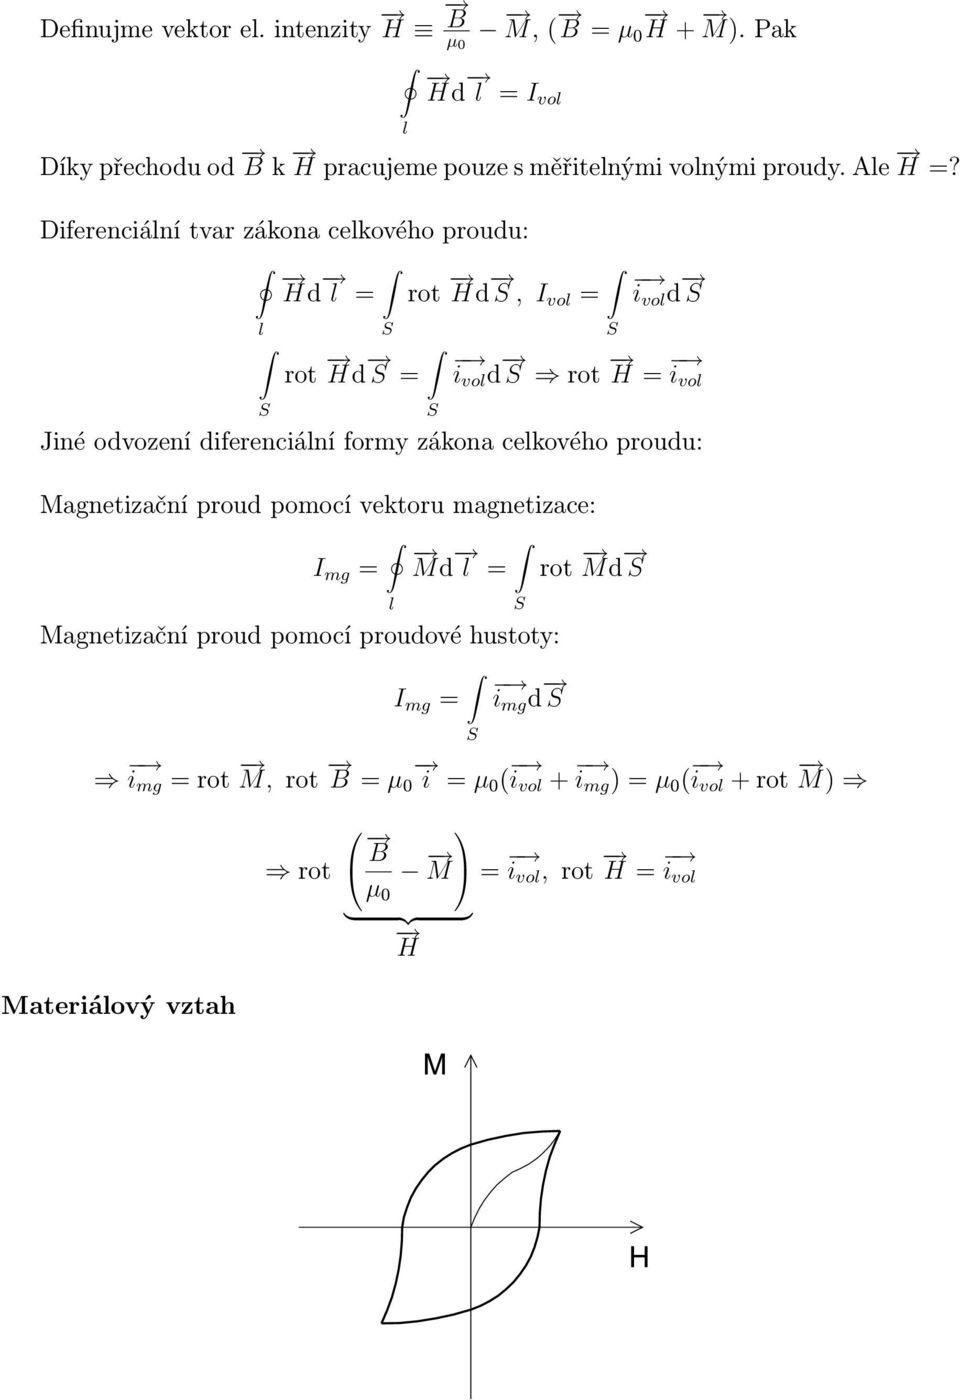 Diferenciání tvar zákona cekového proudu: H d = rot H d, I vo = rot H d = i vo d i vo d rot H = i vo Jiné odvození diferenciání formy